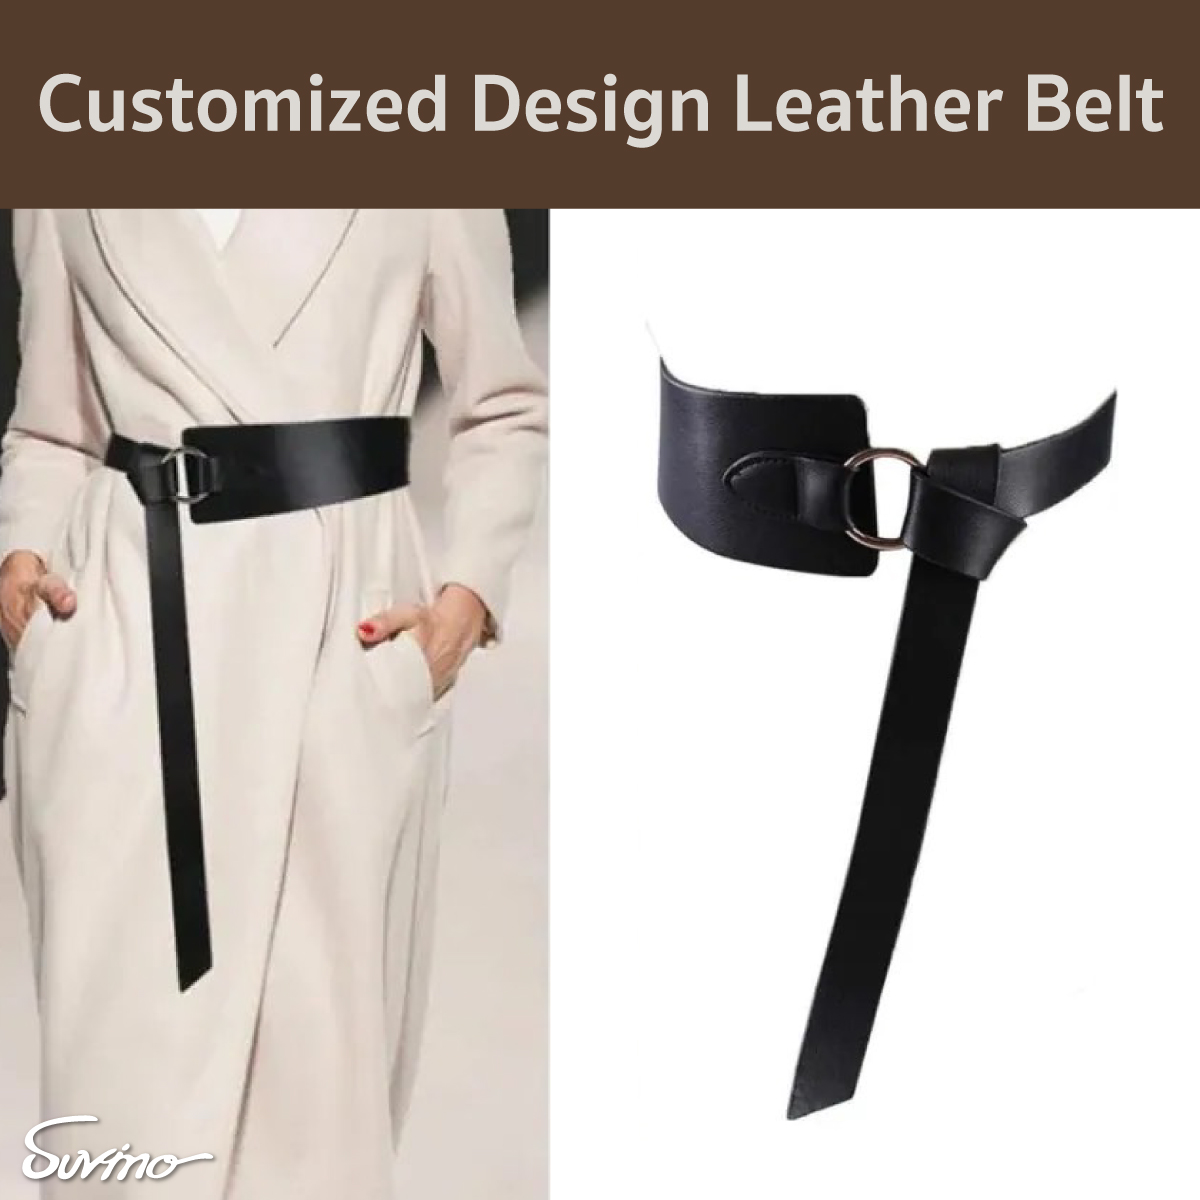 Customized Design Leather Belt